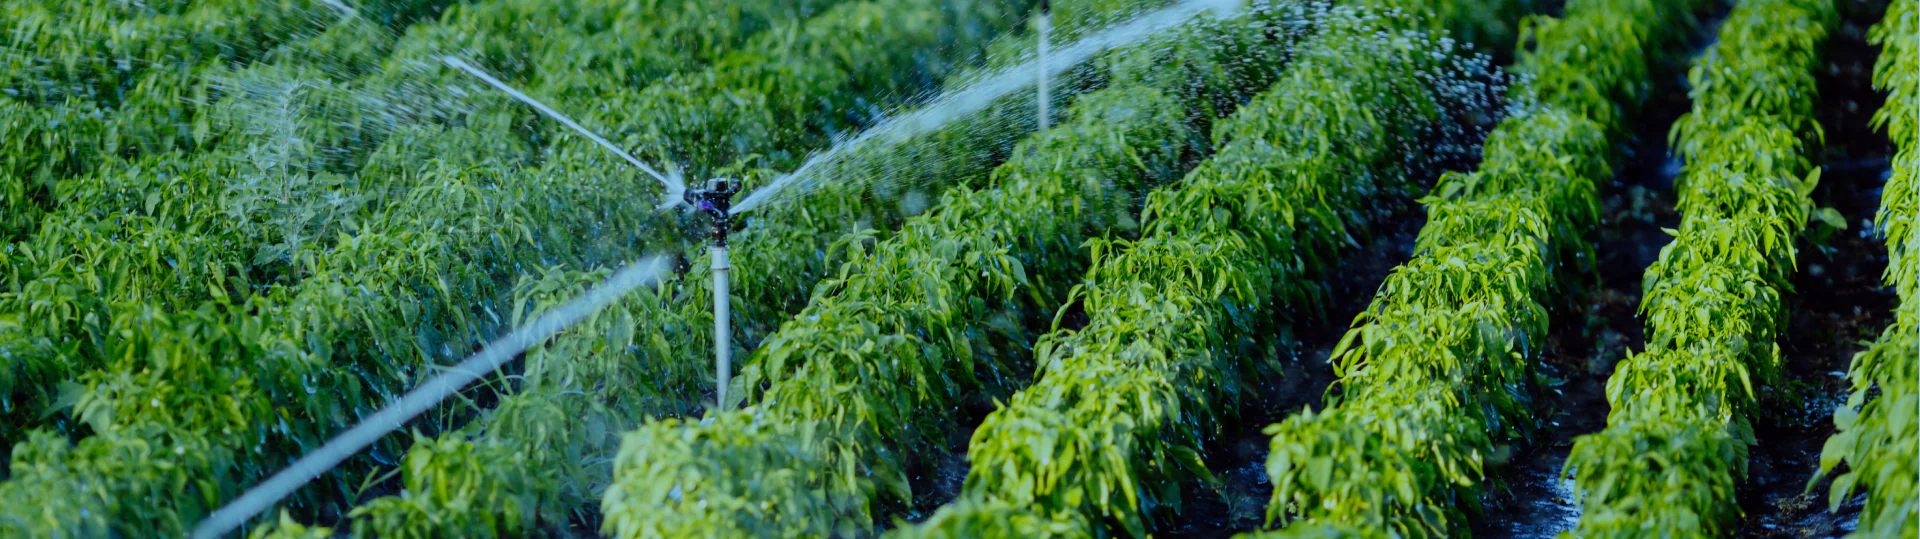 irrigation system in garden